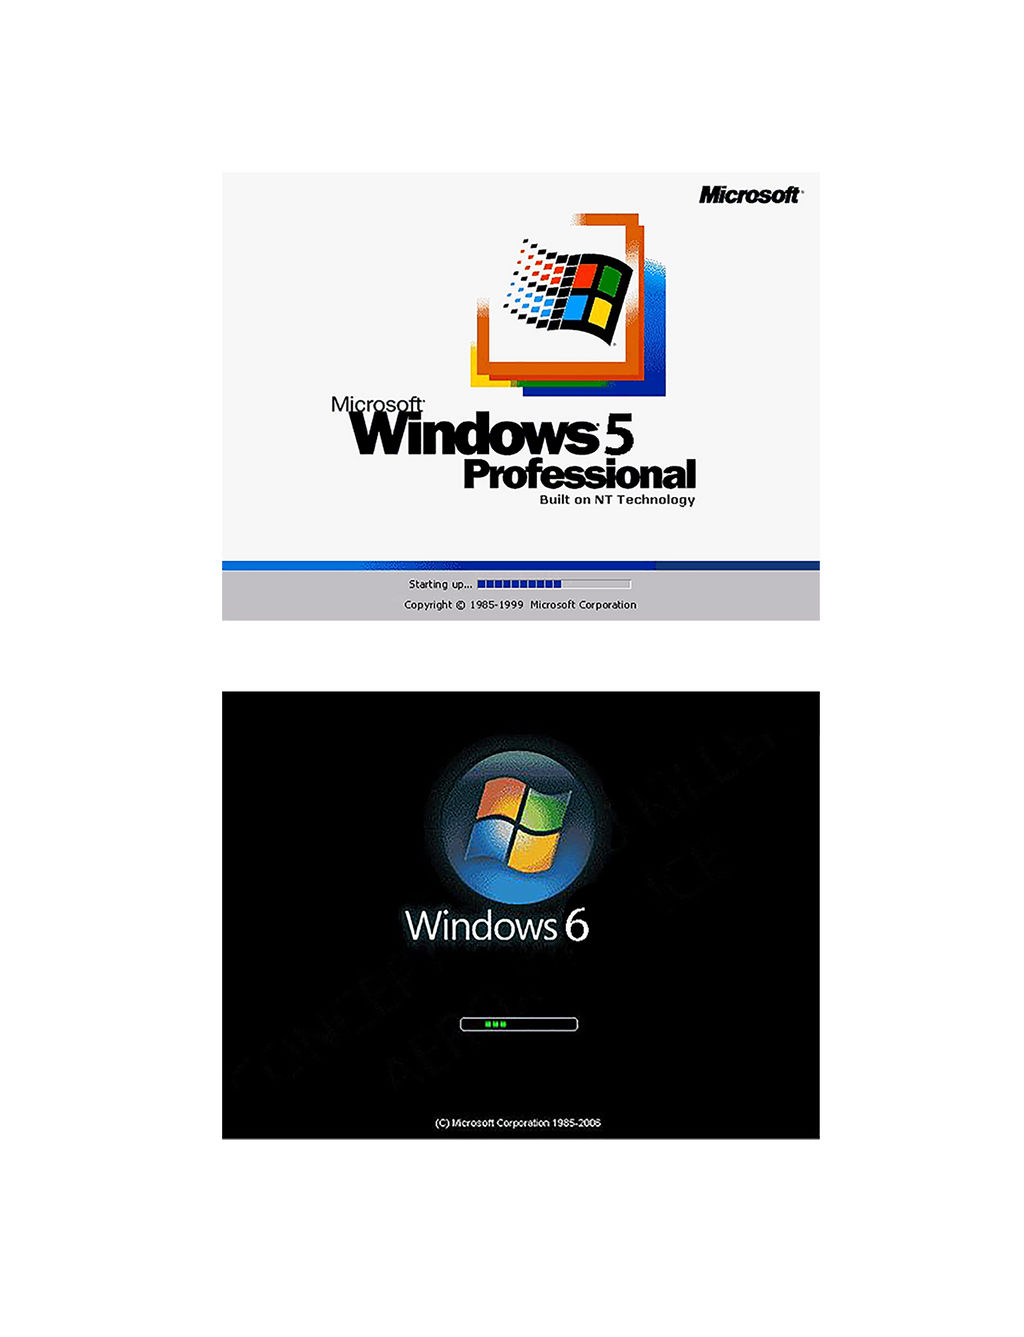 bootscreens_of_windows_5_and_windows_6_by_kazumikikuchi_dawnywr-fullview.jpg